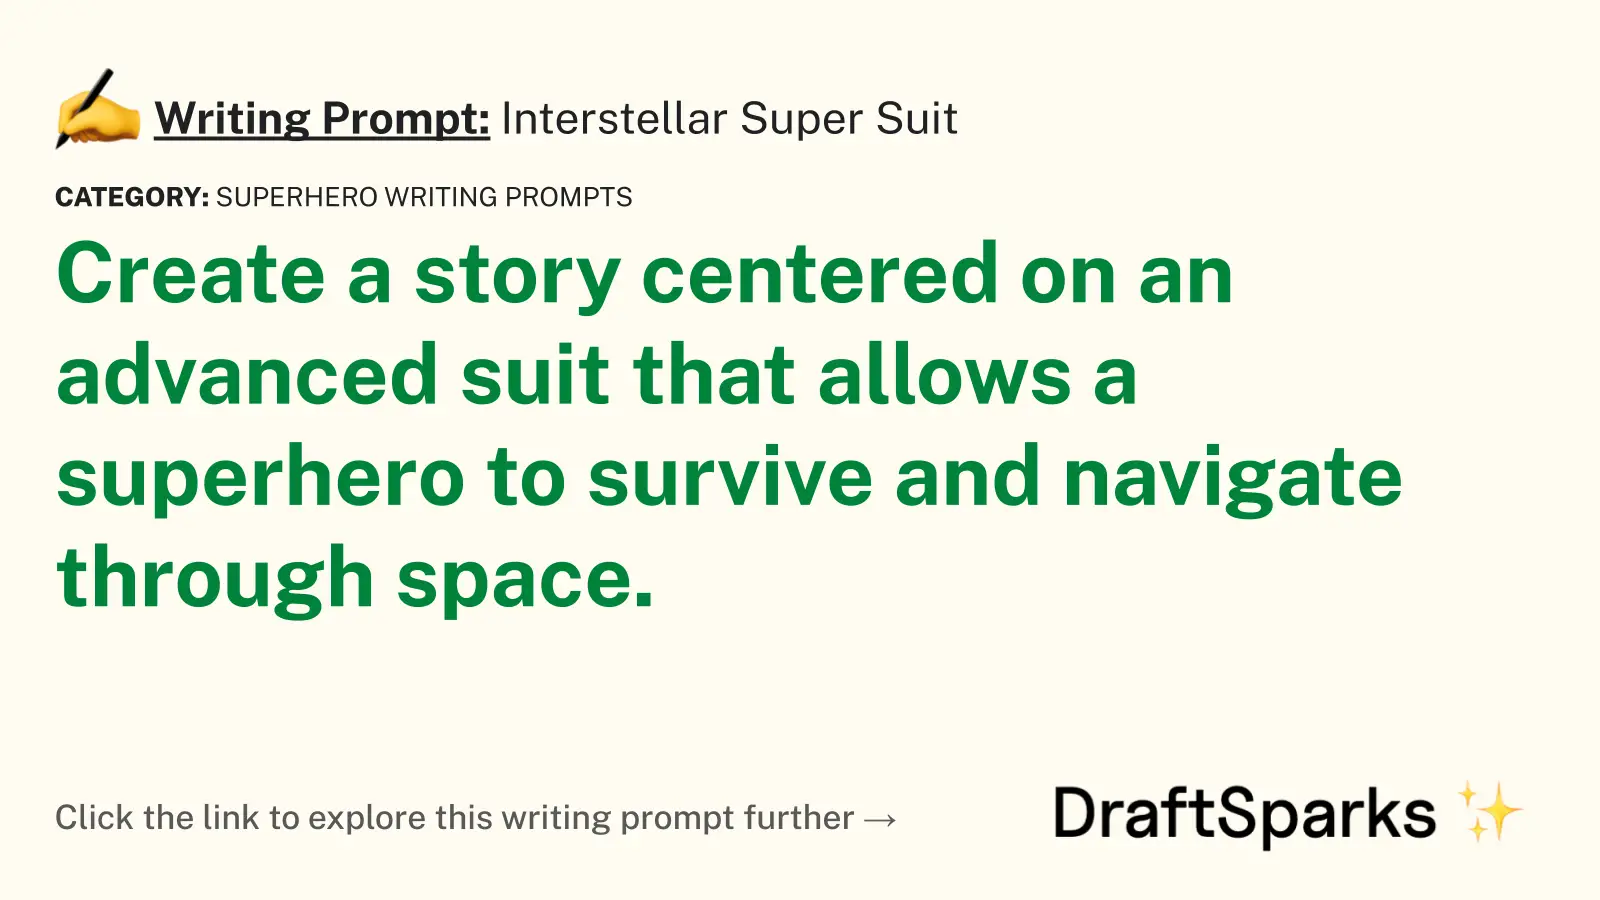 Interstellar Super Suit